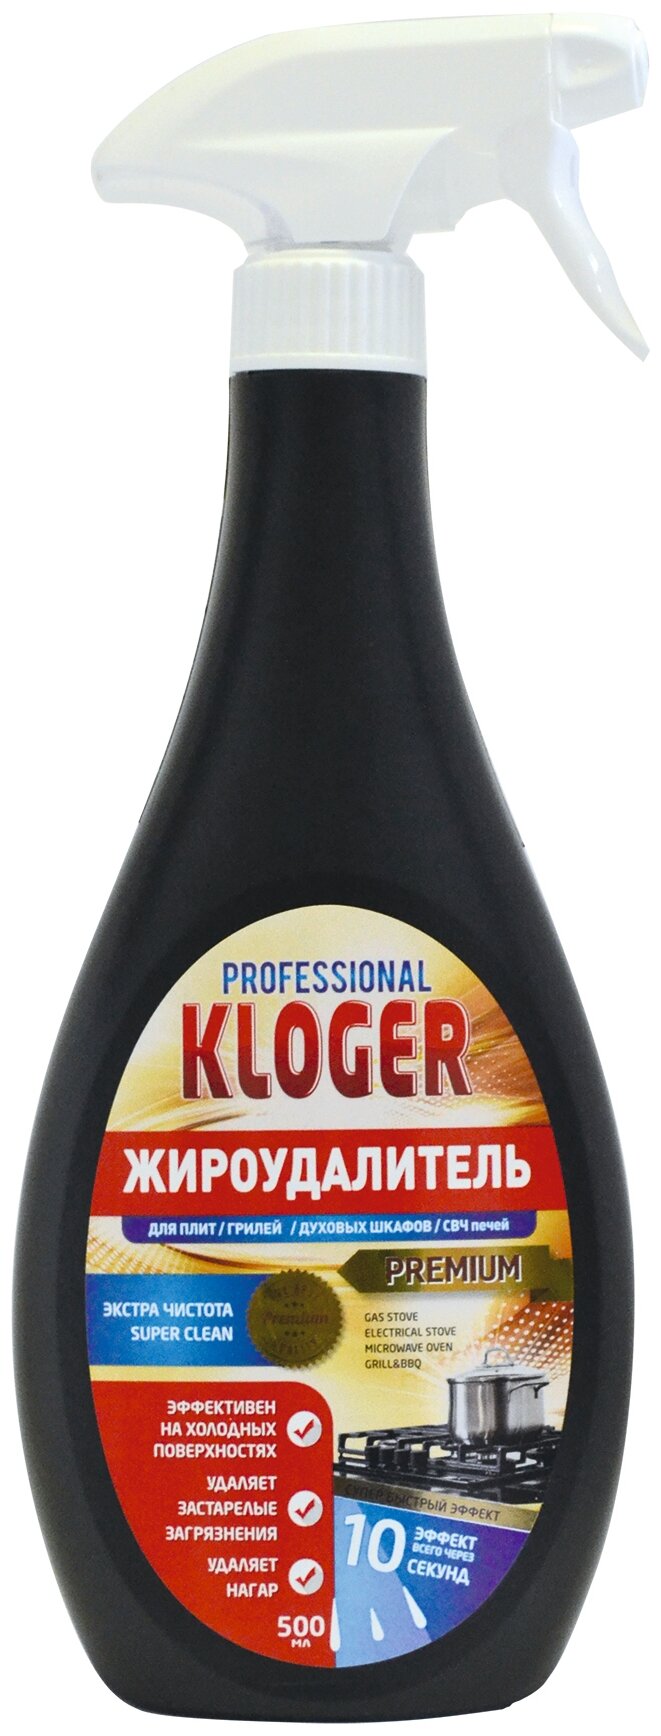 Чистящее средство для плит грилей духовых шкафов и СВЧ печей Жироудалитель Kloger